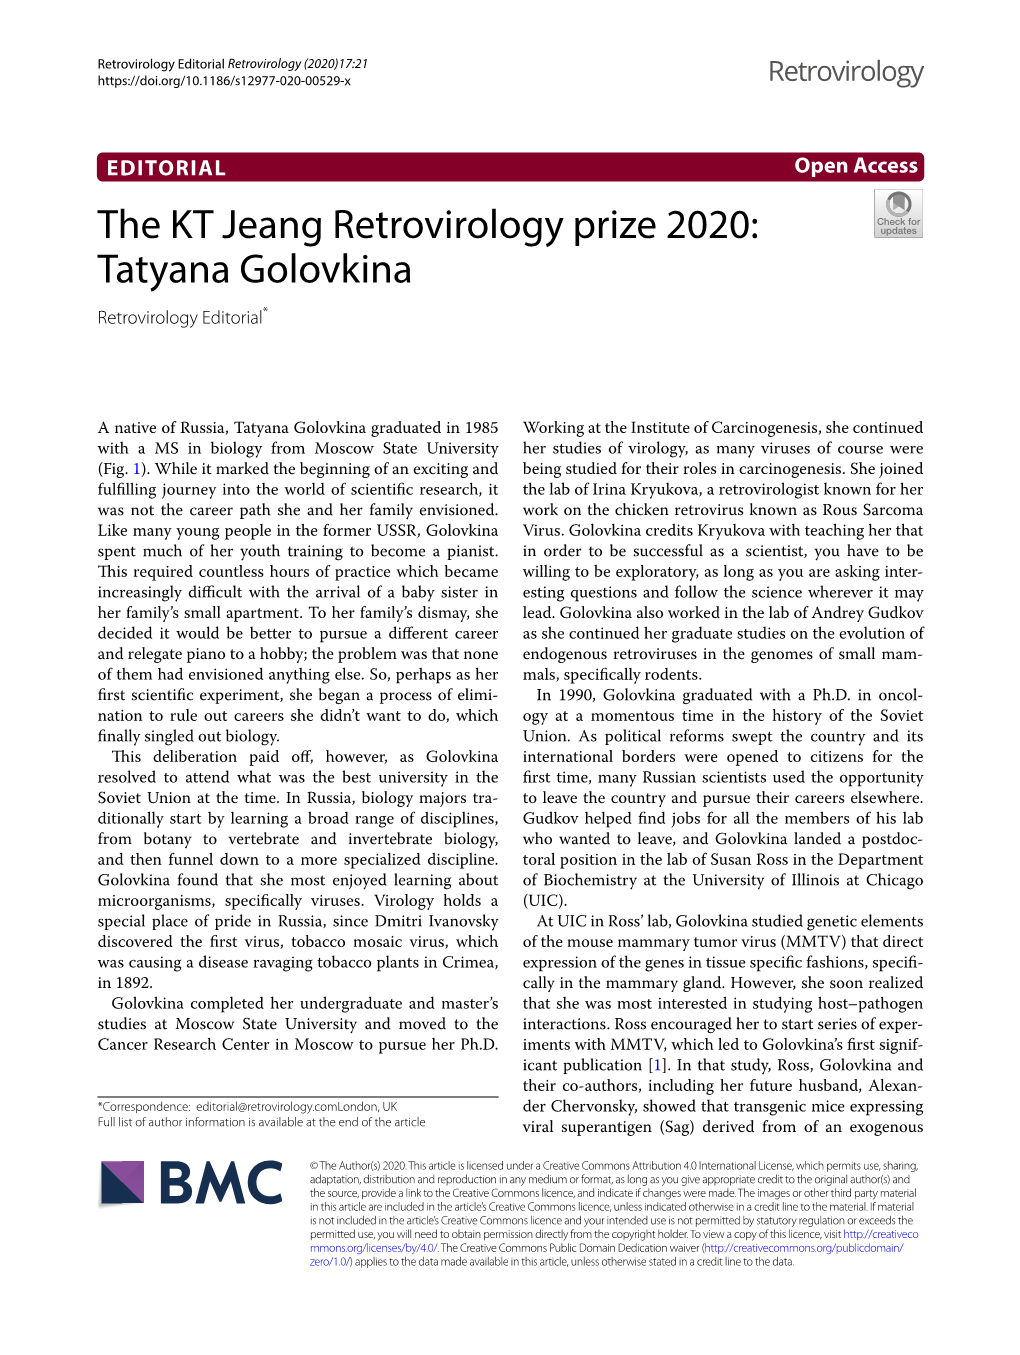 The KT Jeang Retrovirology Prize 2020: Tatyana Golovkina Retrovirology Editorial*